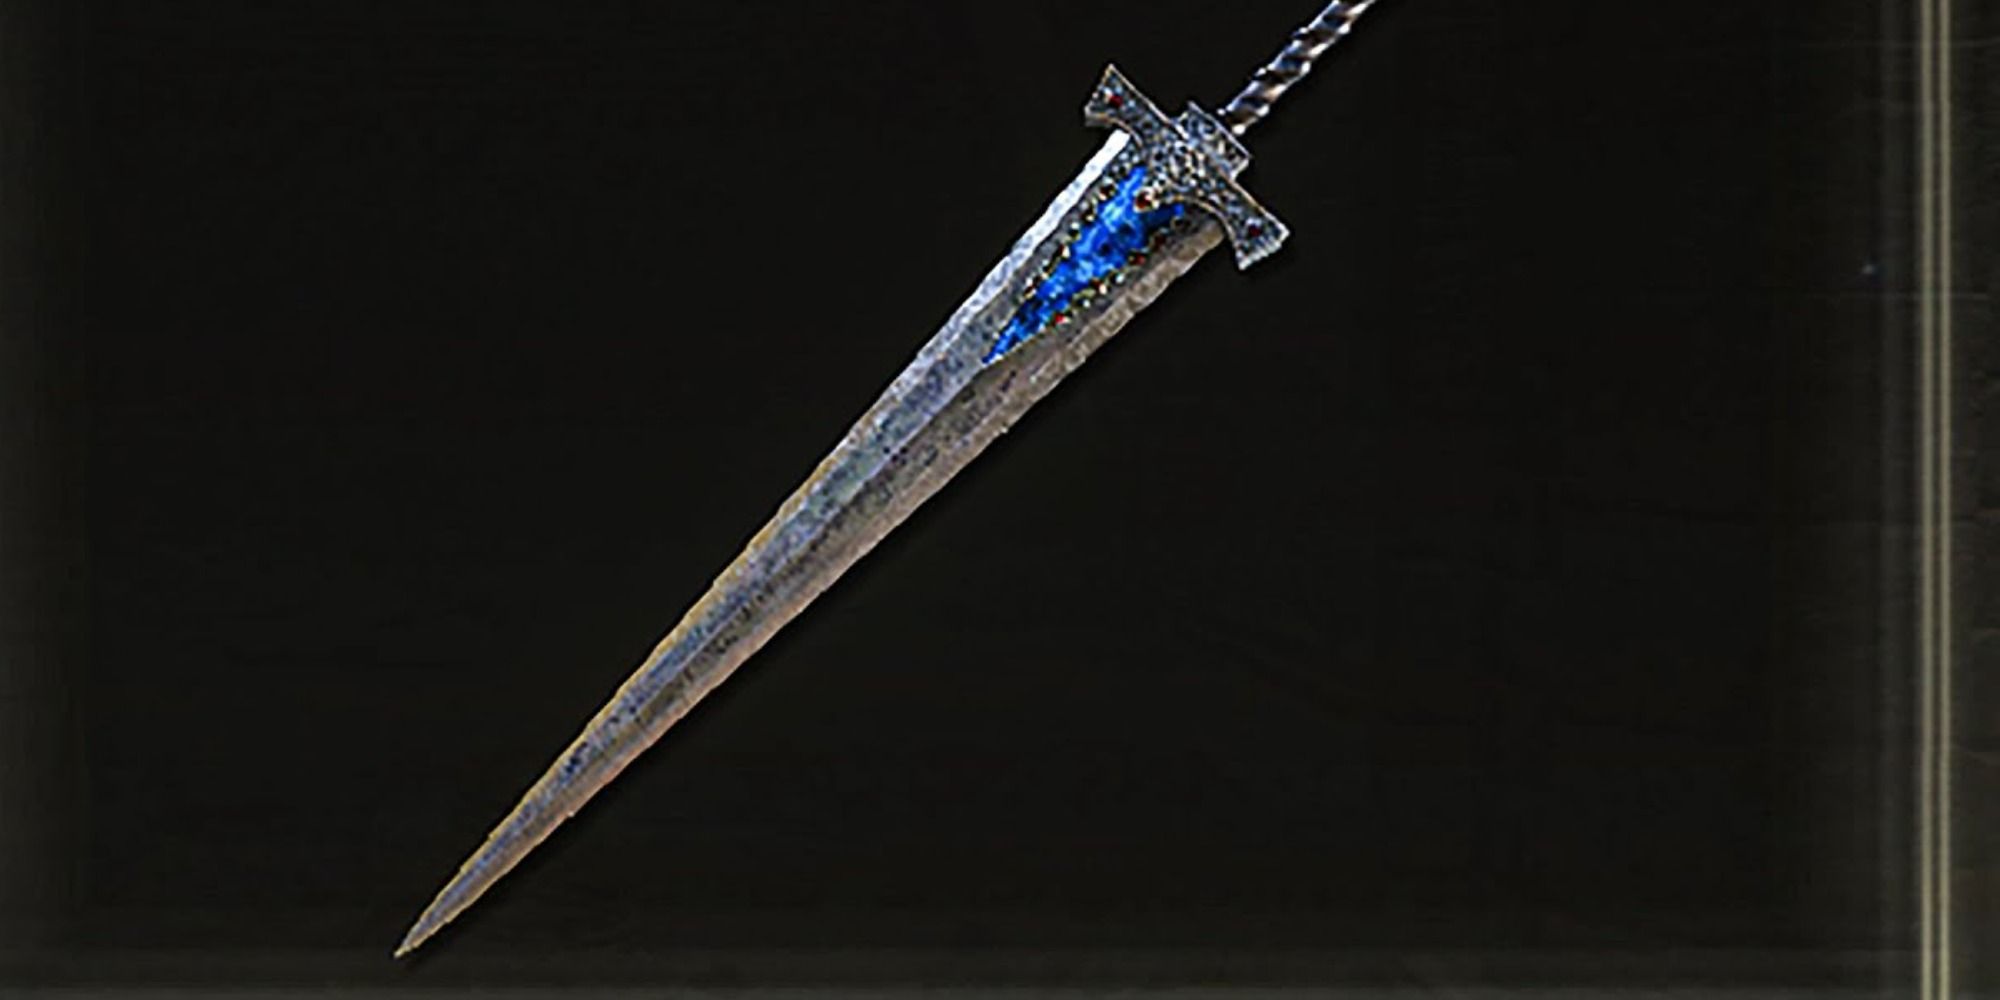 Elden Ring Colossal Swords Troll Knight's Sword design